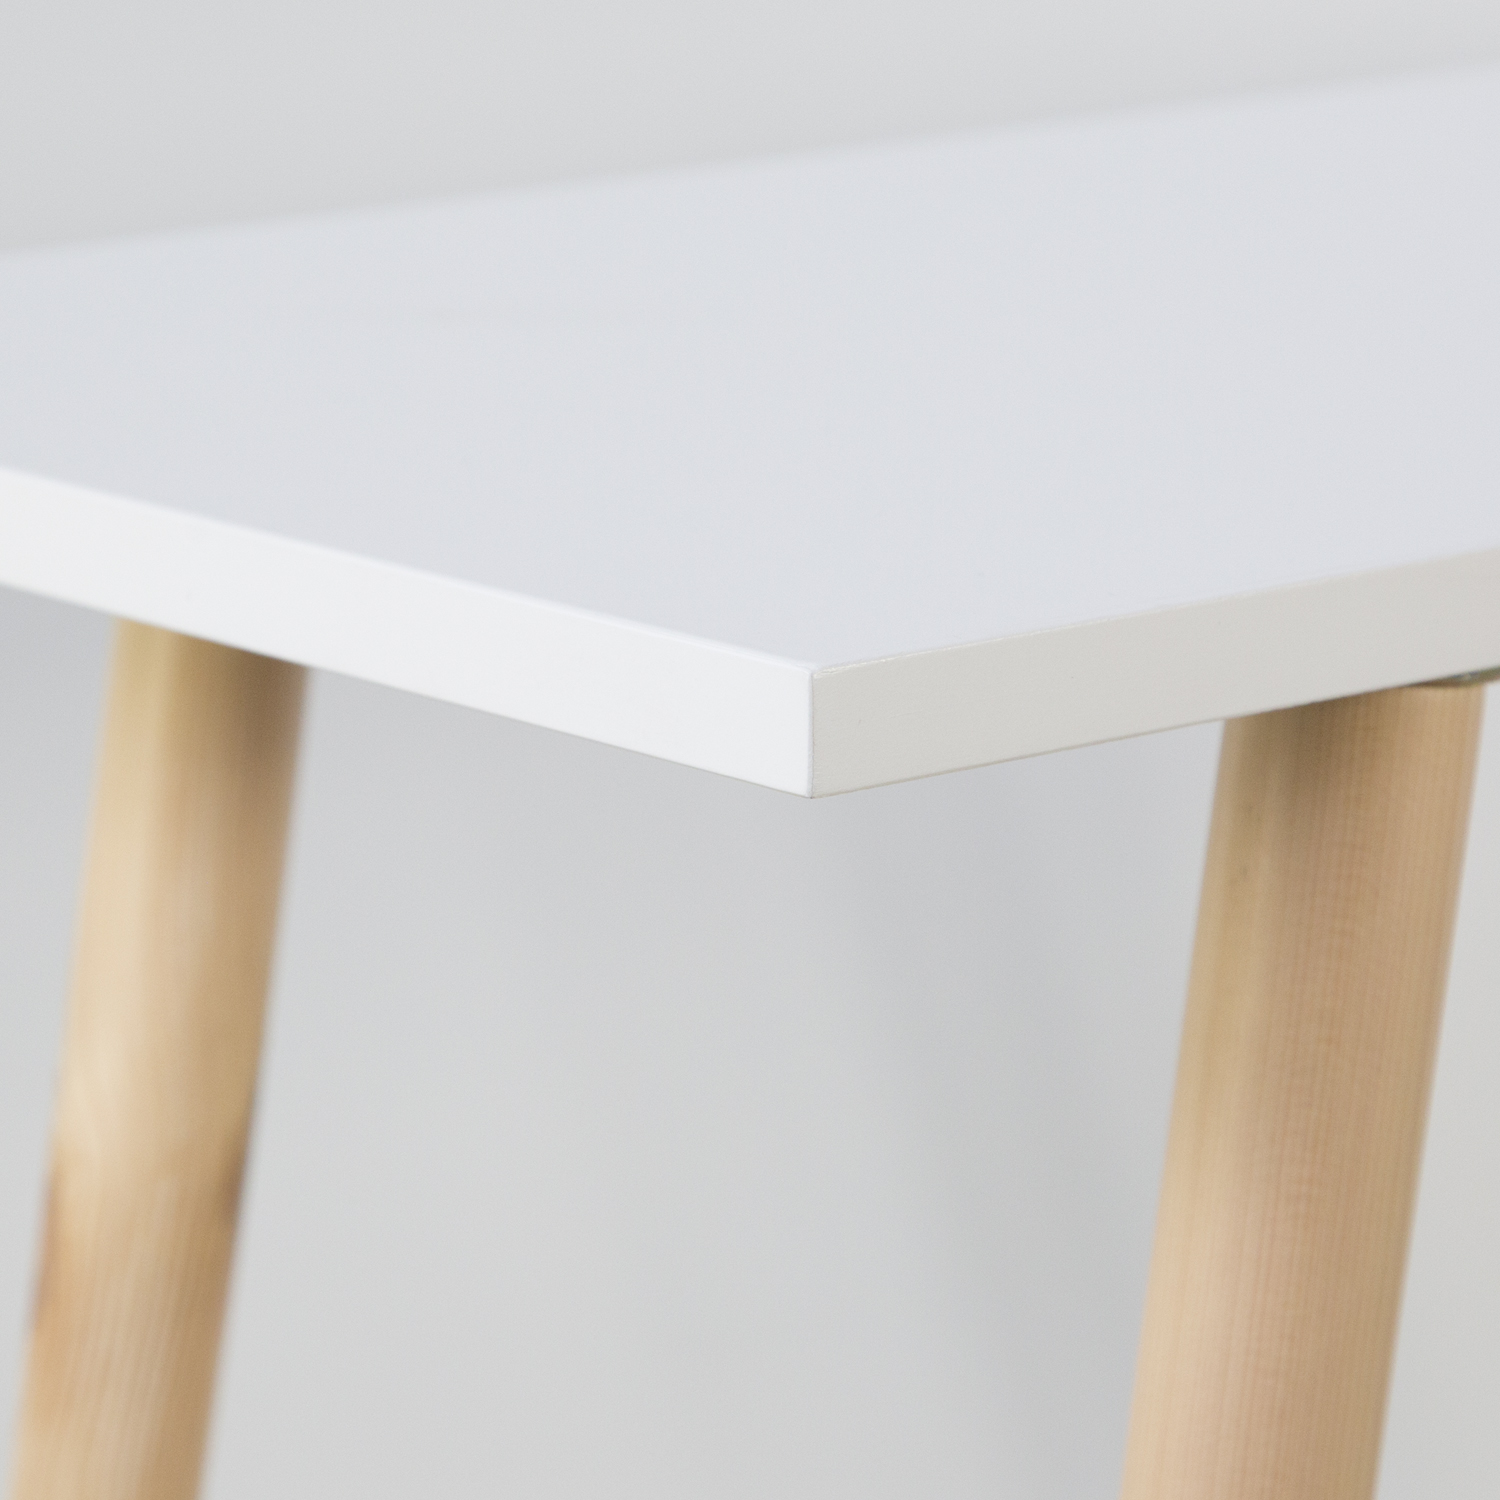 Konsolentisch Beistelltisch Weiß Konsole Tisch Holz Schreibtisch Wandkonsole